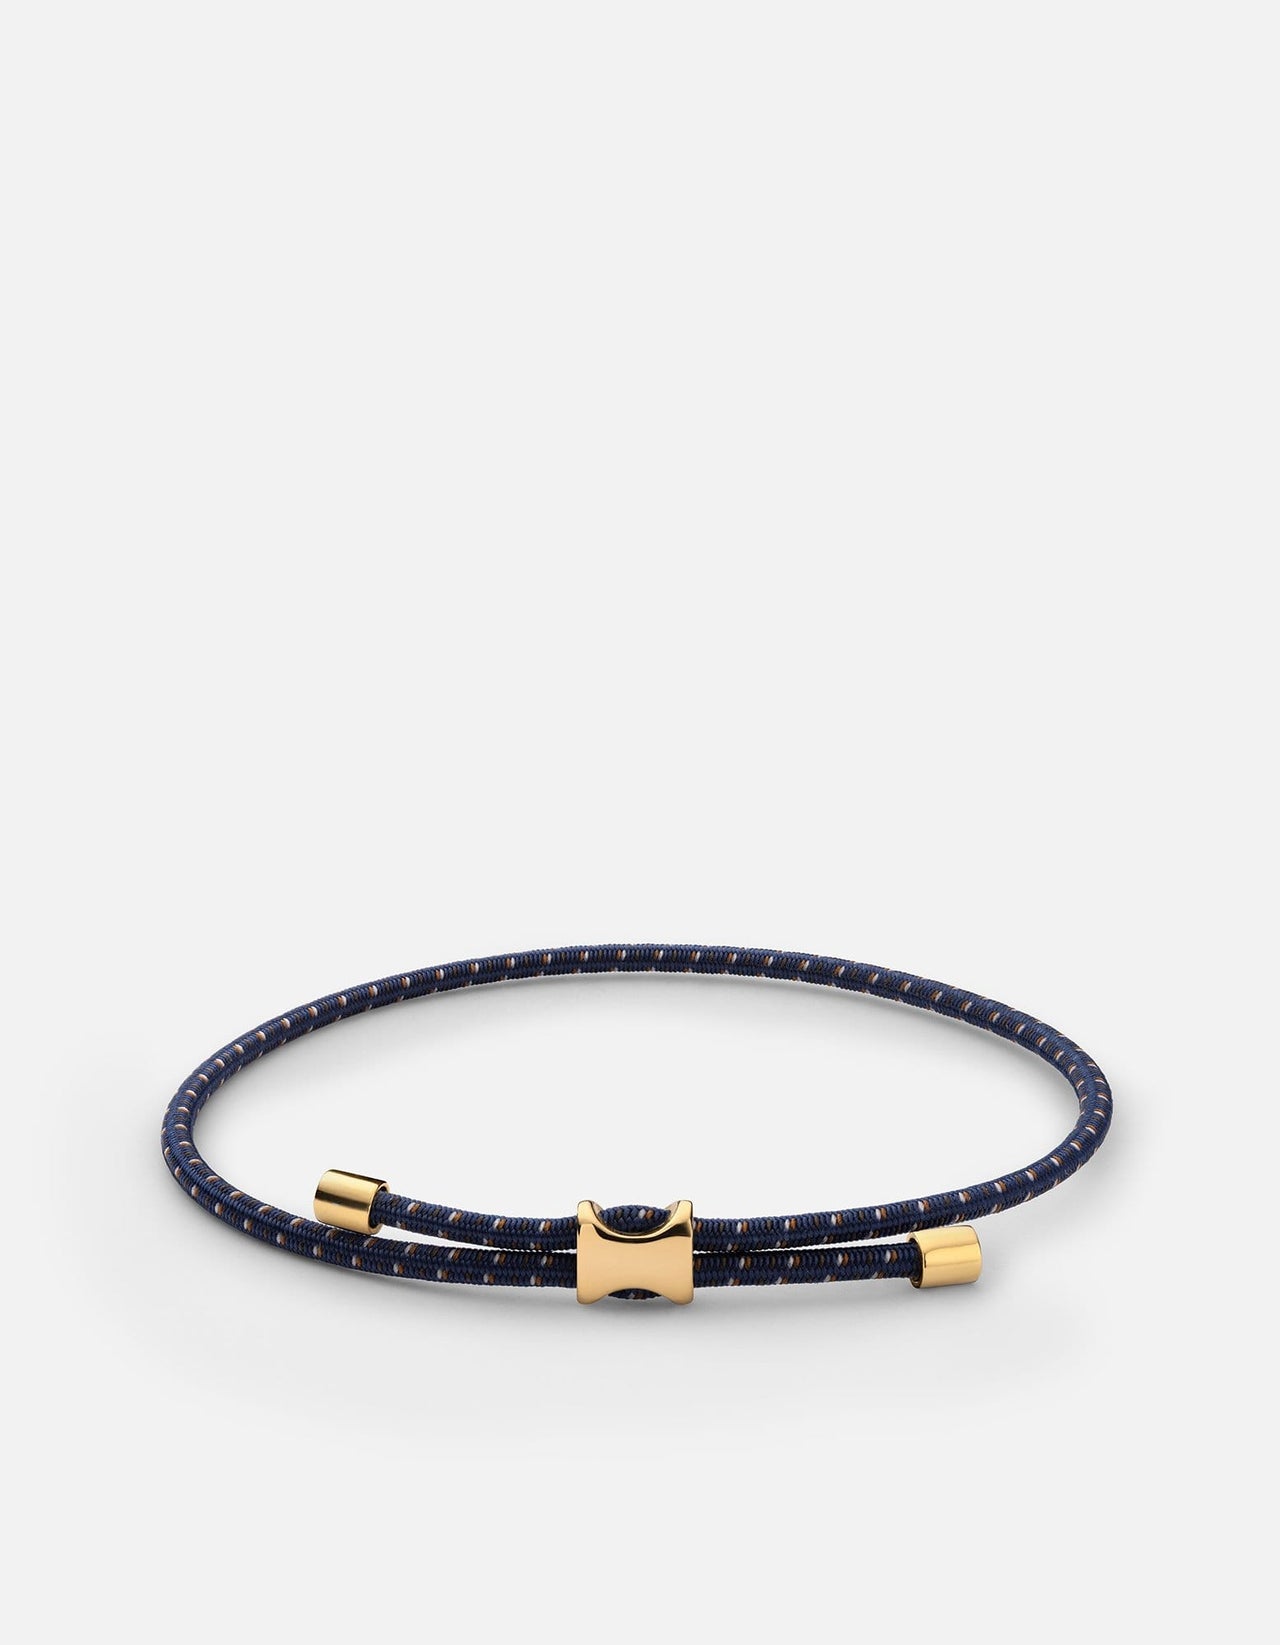 Miansai Men's Orson Pull Bungee Rope Bracelet, Gold Vermeil